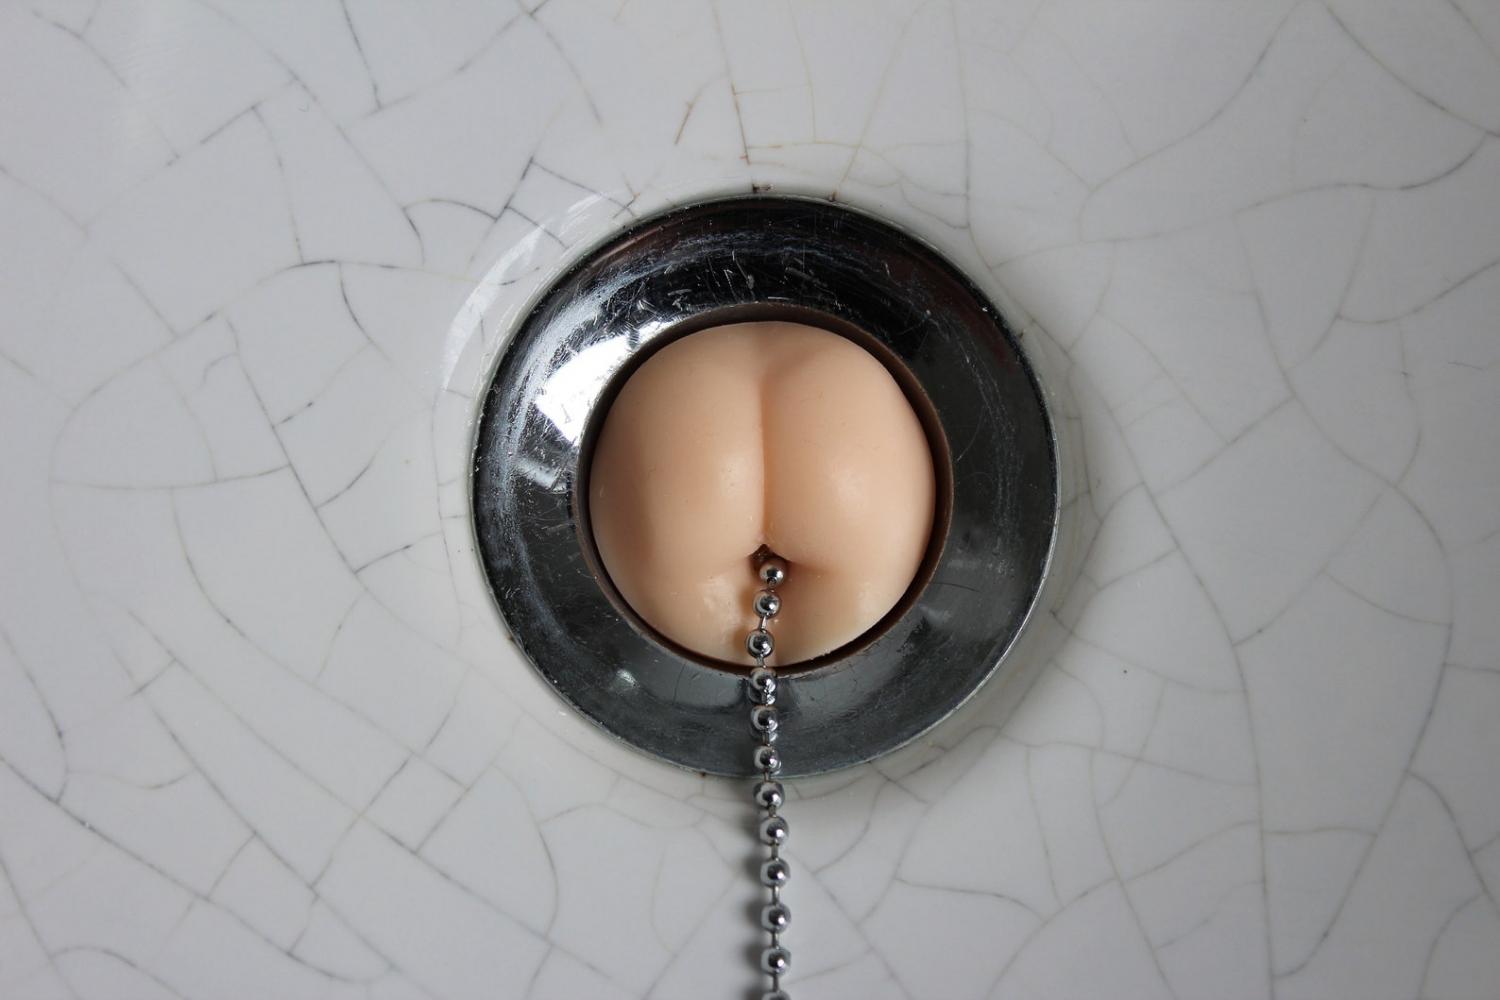 Butt shaped sink plug - butt beads bathtub stopper